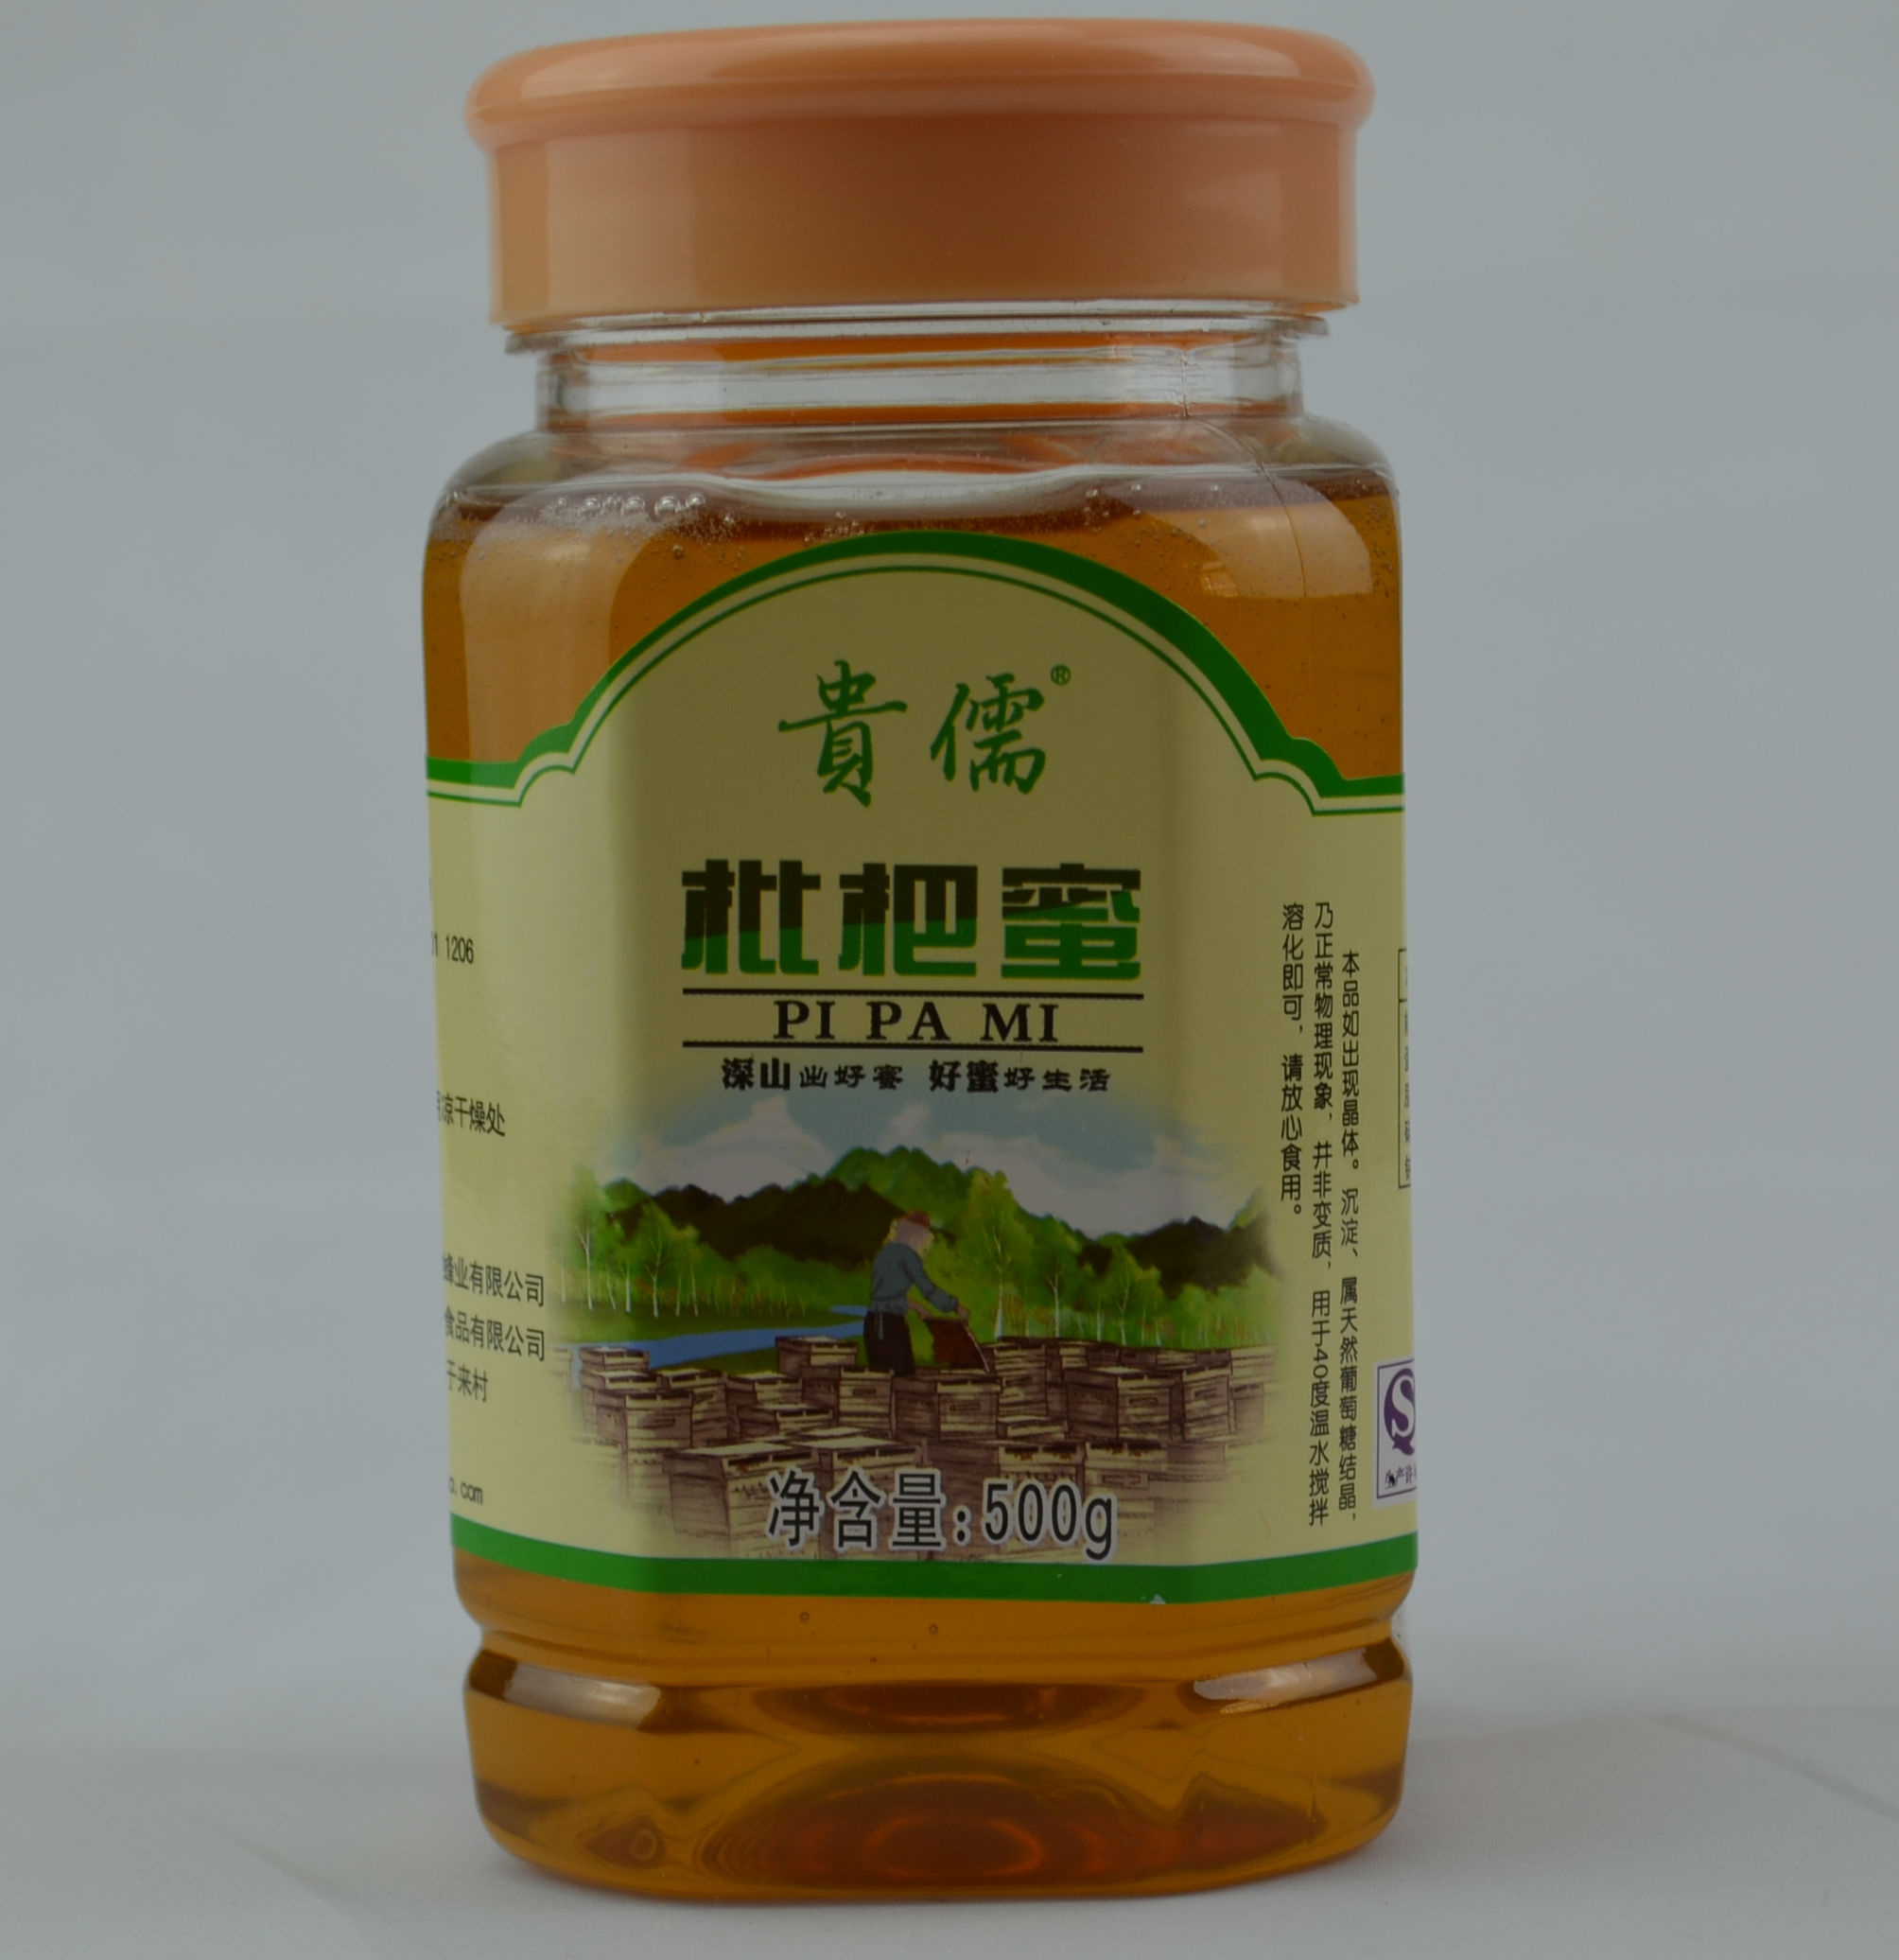 【2015新货】贵儒原生态 纯天然野生农家自产枇杷蜂蜜包邮